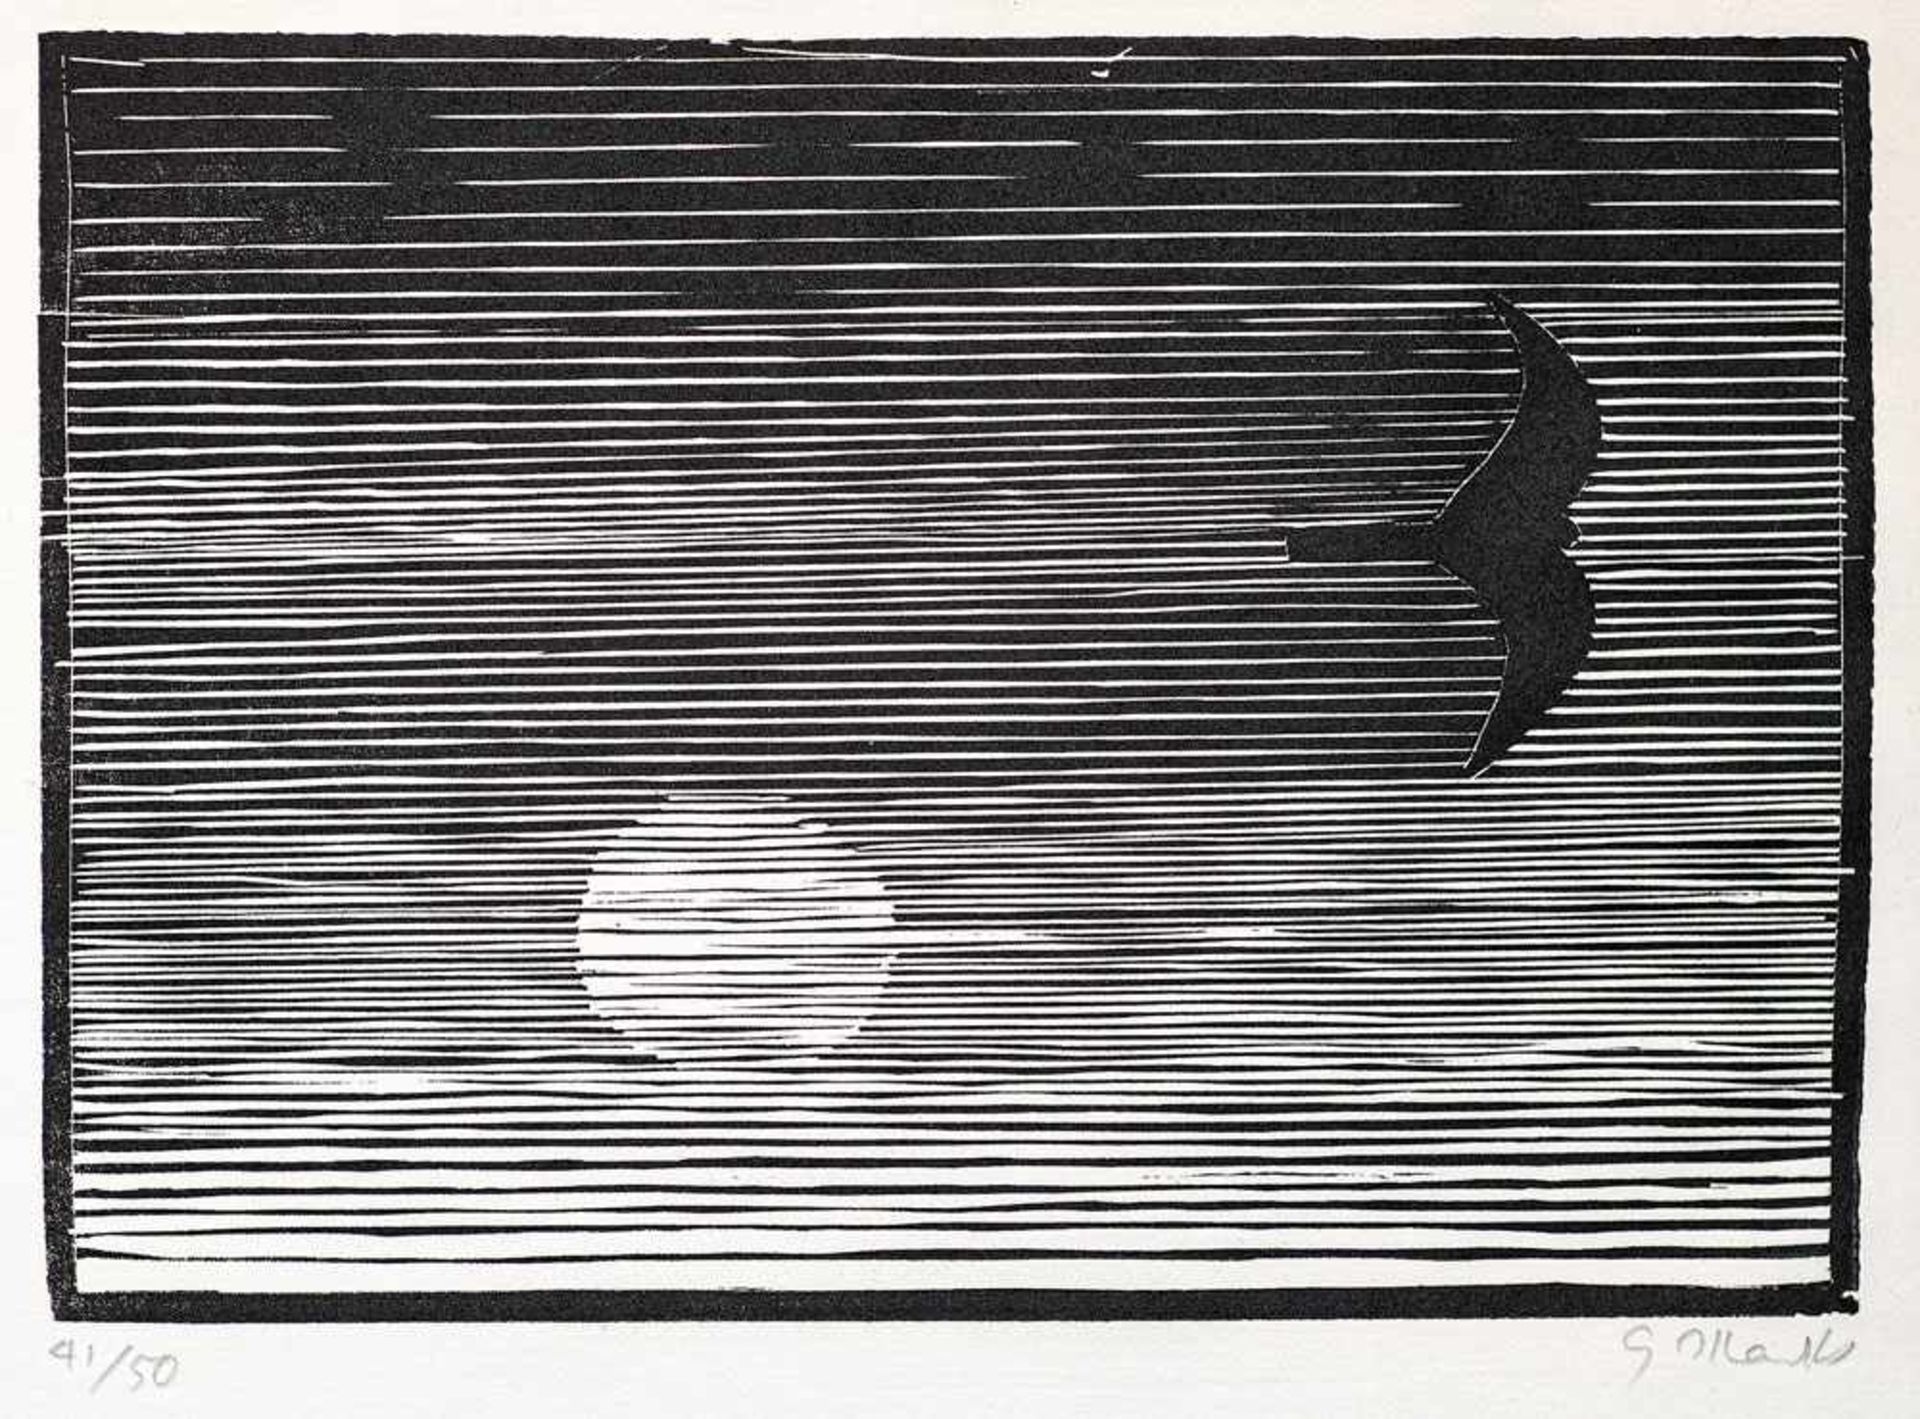 Gerhard Marcks (1889 Berlin - 1981 Burgbrohl/Eifel) Dämmerung, 1954. Holzschnitt auf Japan. 179 x